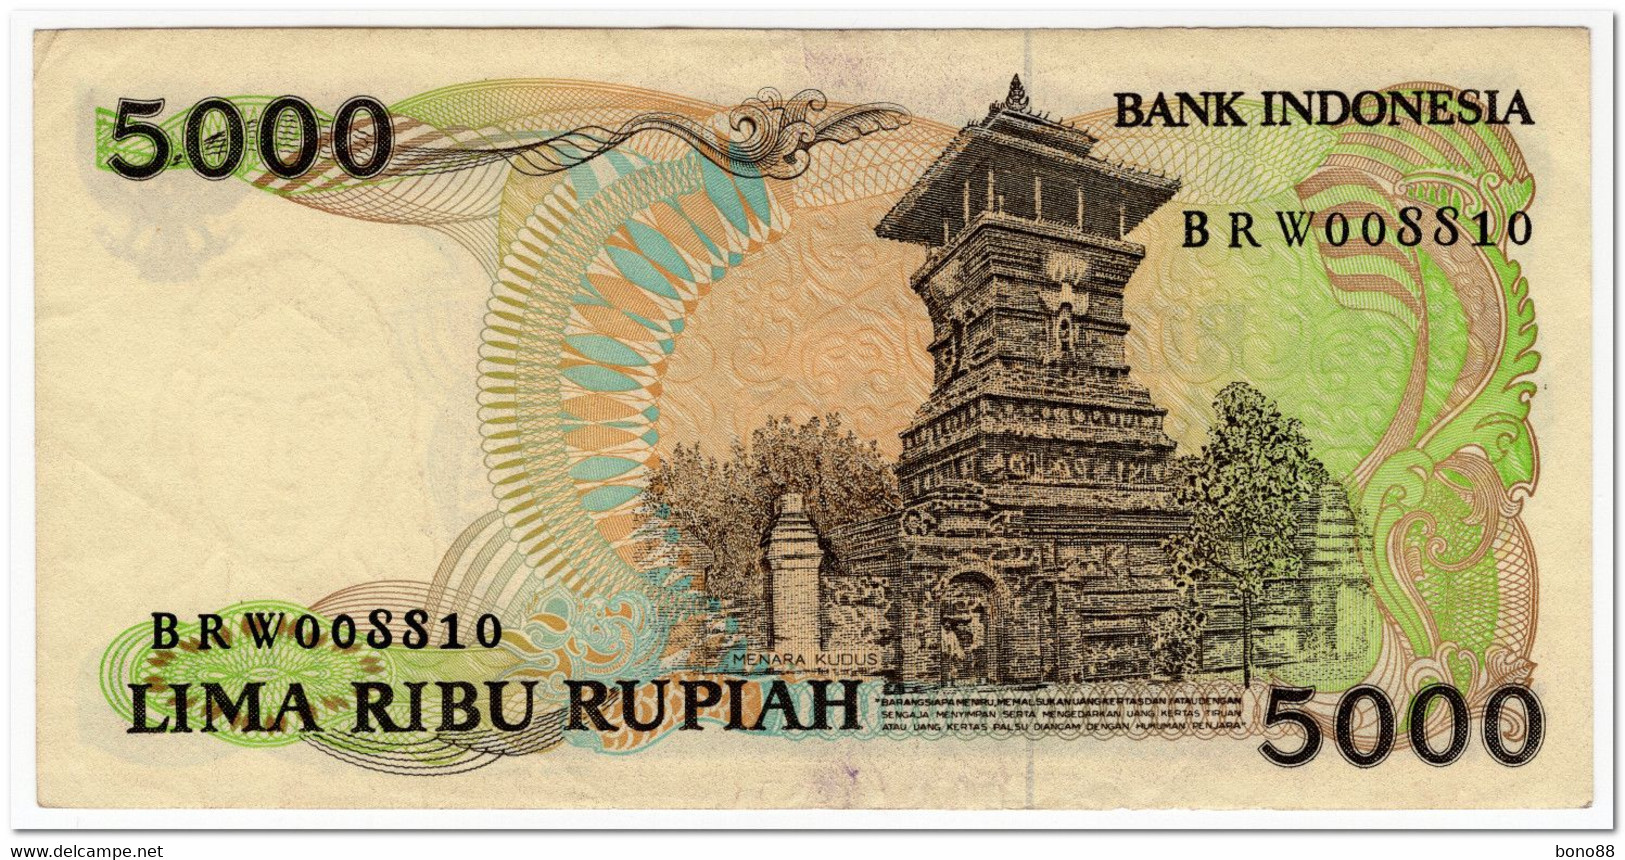 INDONESIA,5000 RUPIAH,1986,P.125,P.125,XF - Indonesia